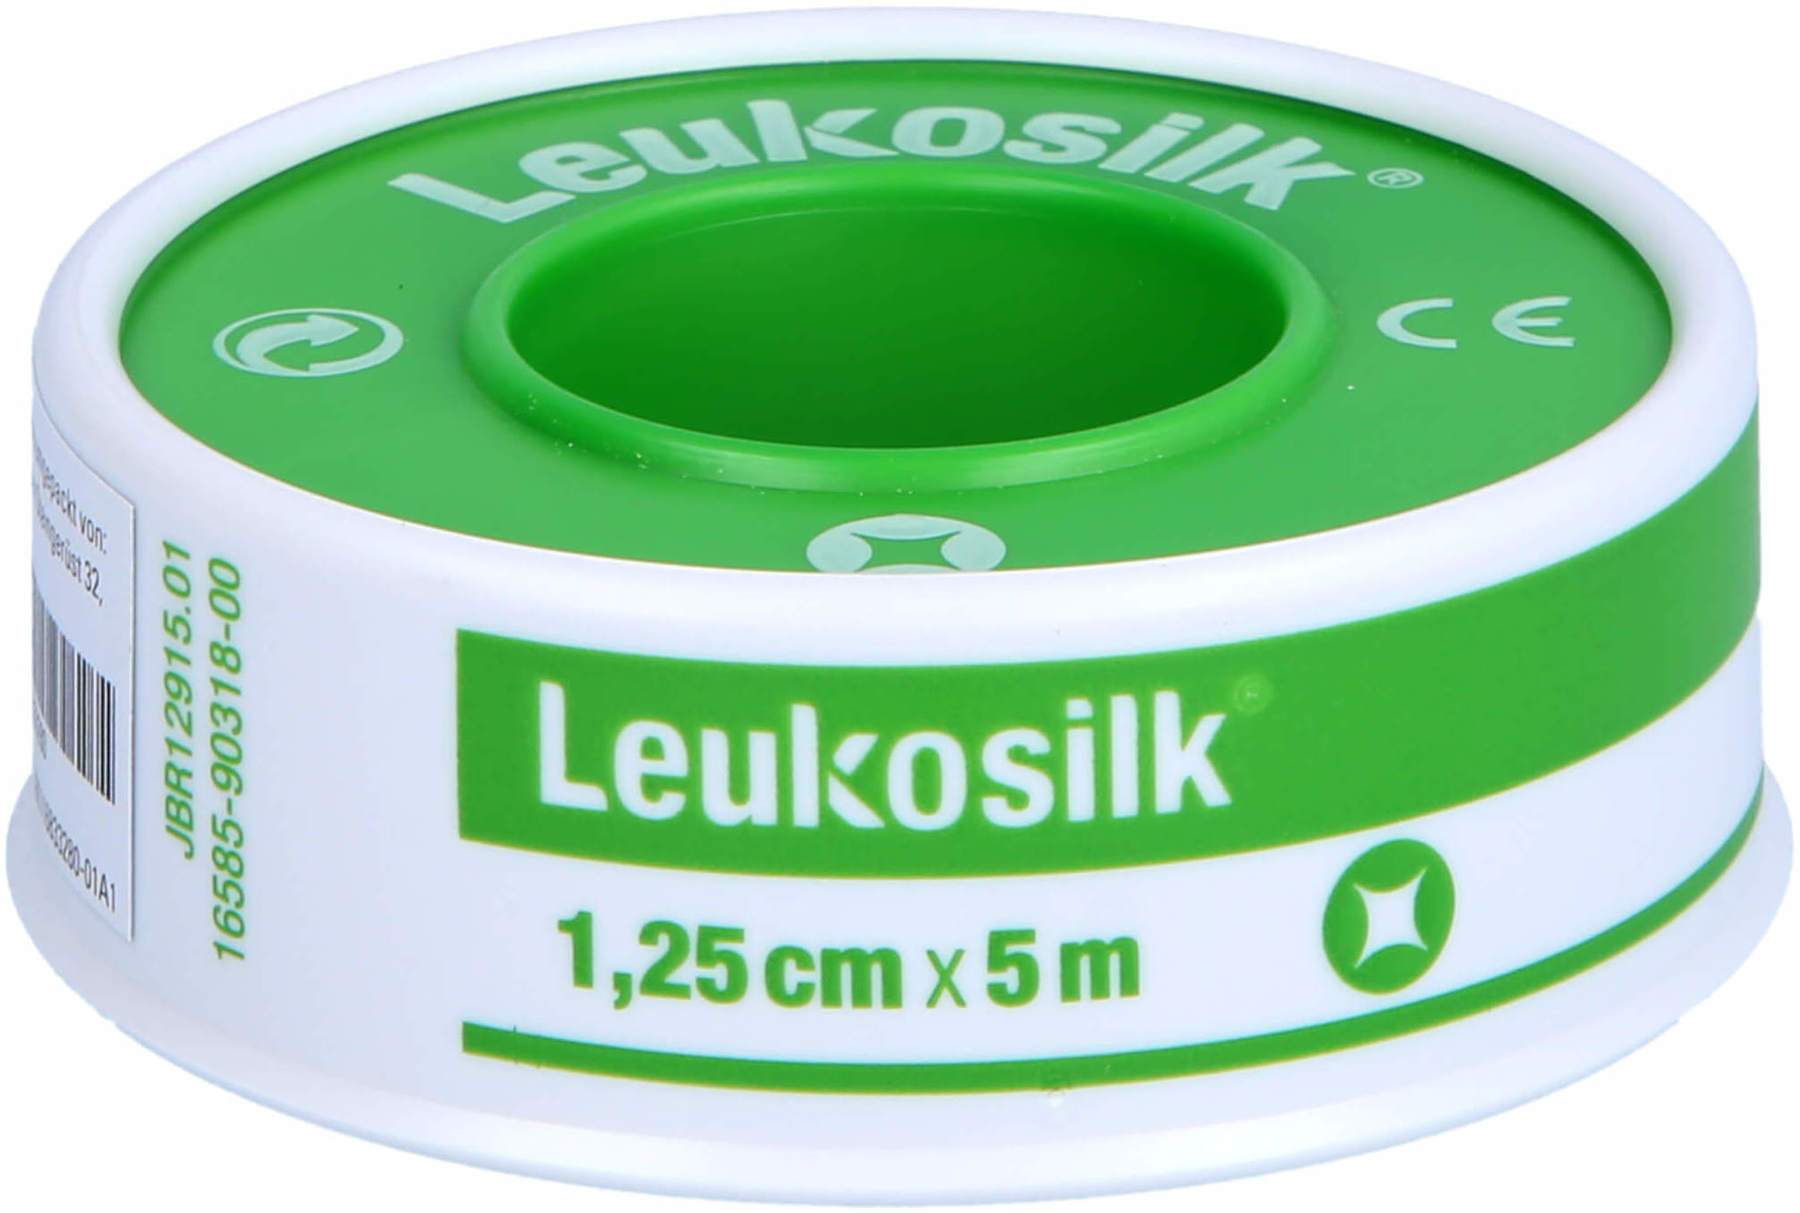 Leukosilk® Fixierpflaster zum Bestpreis kaufen – Satiata Med